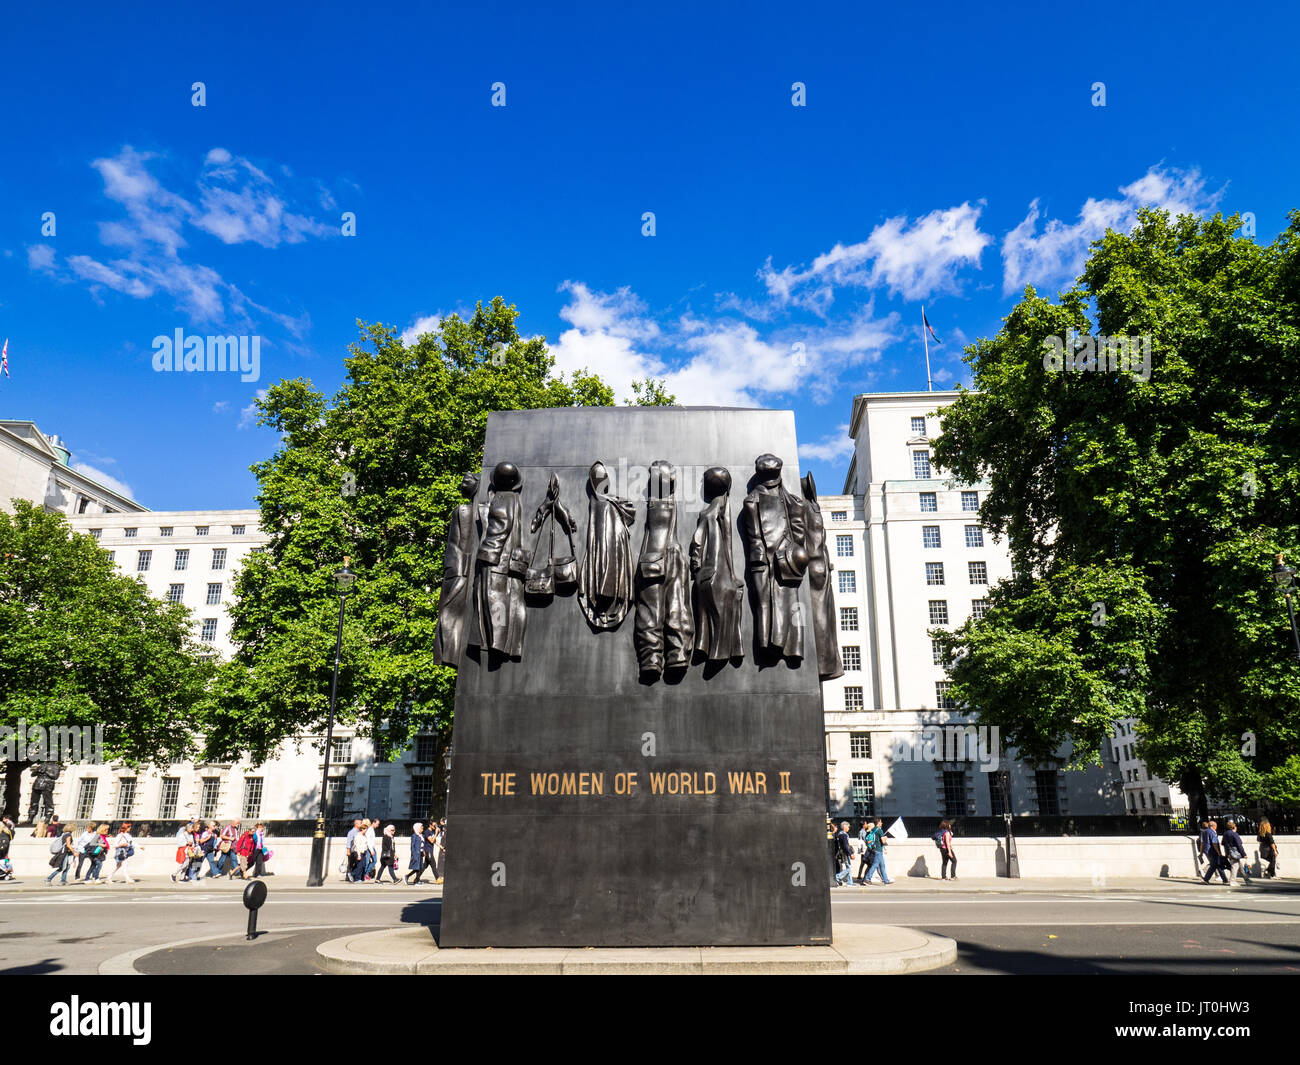 Monument à la femme de la Seconde Guerre mondiale est un monument commémoratif de guerre situé sur Whitehall à Londres. John Mills était sculpteur. Consacré en 2005. Banque D'Images